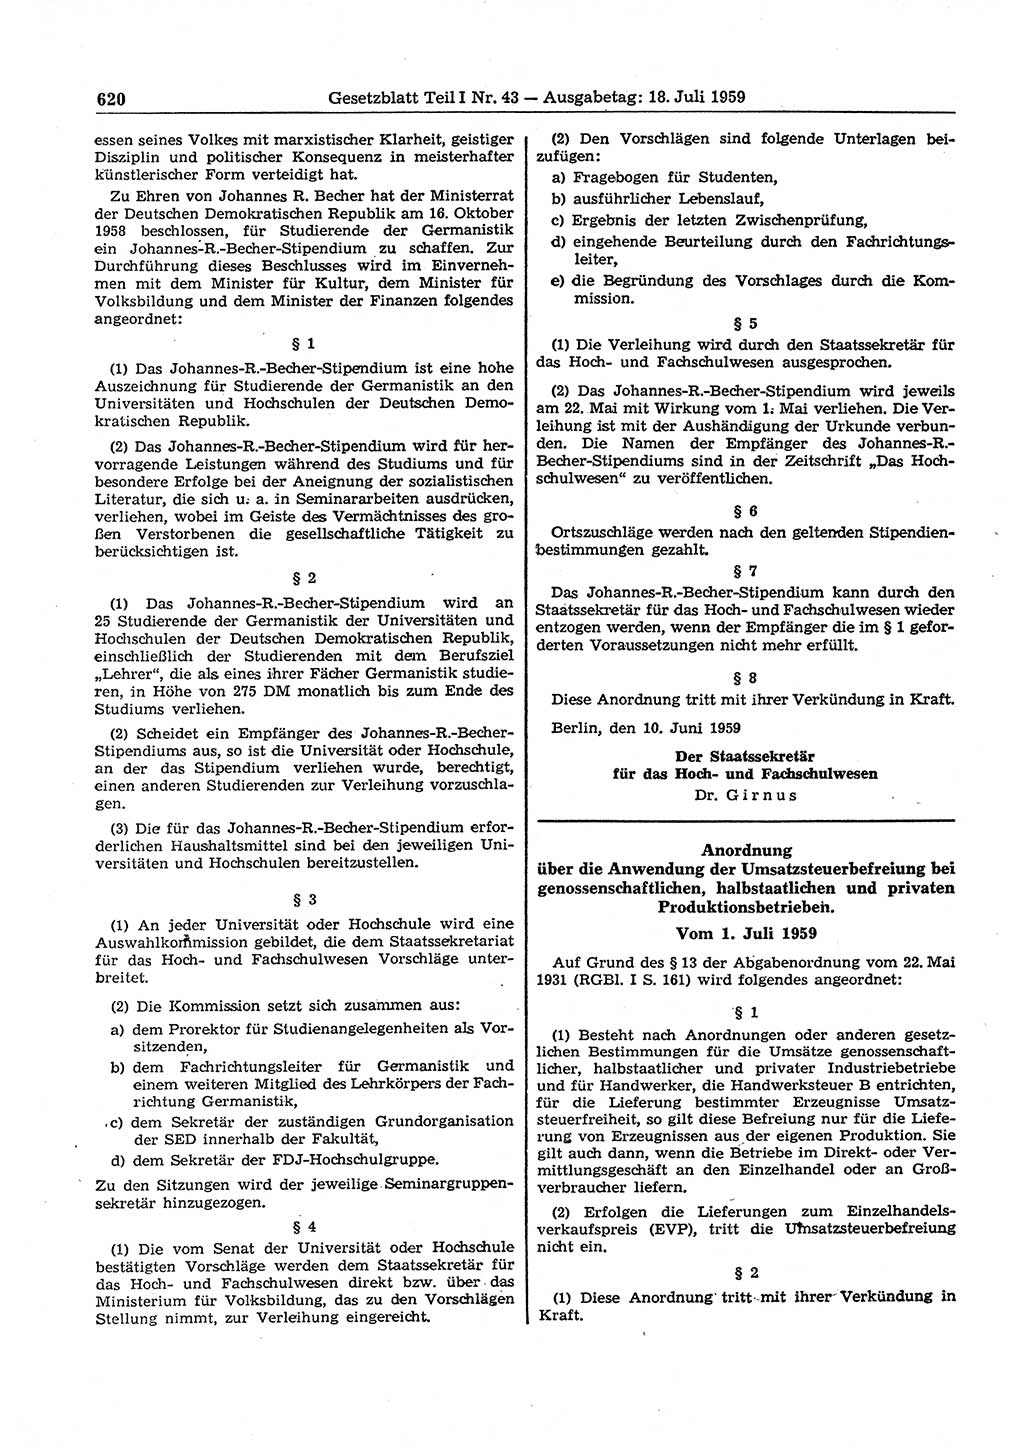 Gesetzblatt (GBl.) der Deutschen Demokratischen Republik (DDR) Teil Ⅰ 1959, Seite 620 (GBl. DDR Ⅰ 1959, S. 620)